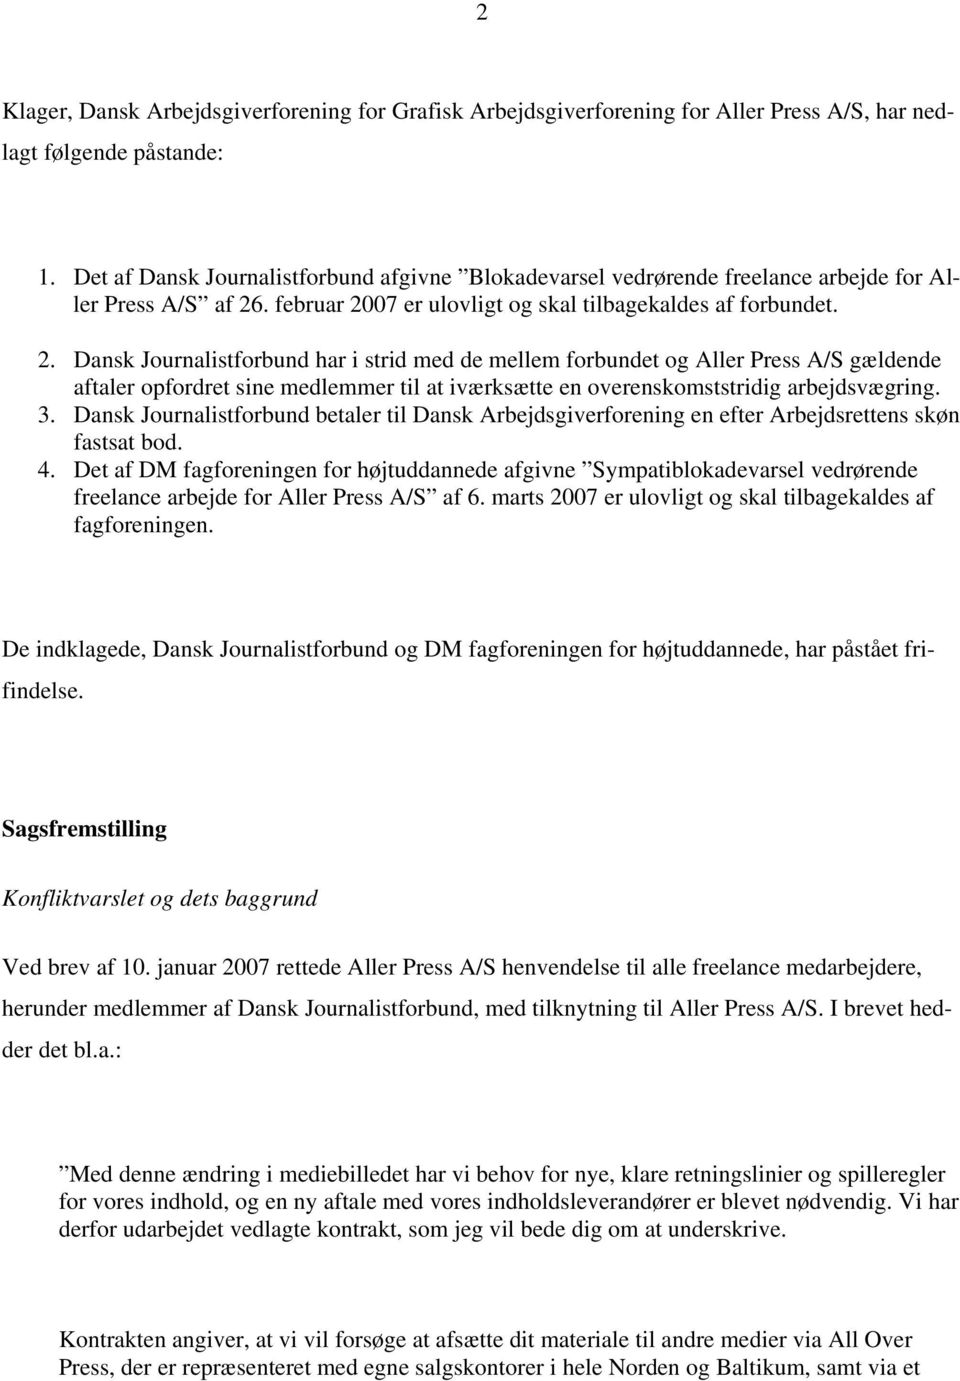 . februar 2007 er ulovligt og skal tilbagekaldes af forbundet. 2. Dansk Journalistforbund har i strid med de mellem forbundet og Aller Press A/S gældende aftaler opfordret sine medlemmer til at iværksætte en overenskomststridig arbejdsvægring.